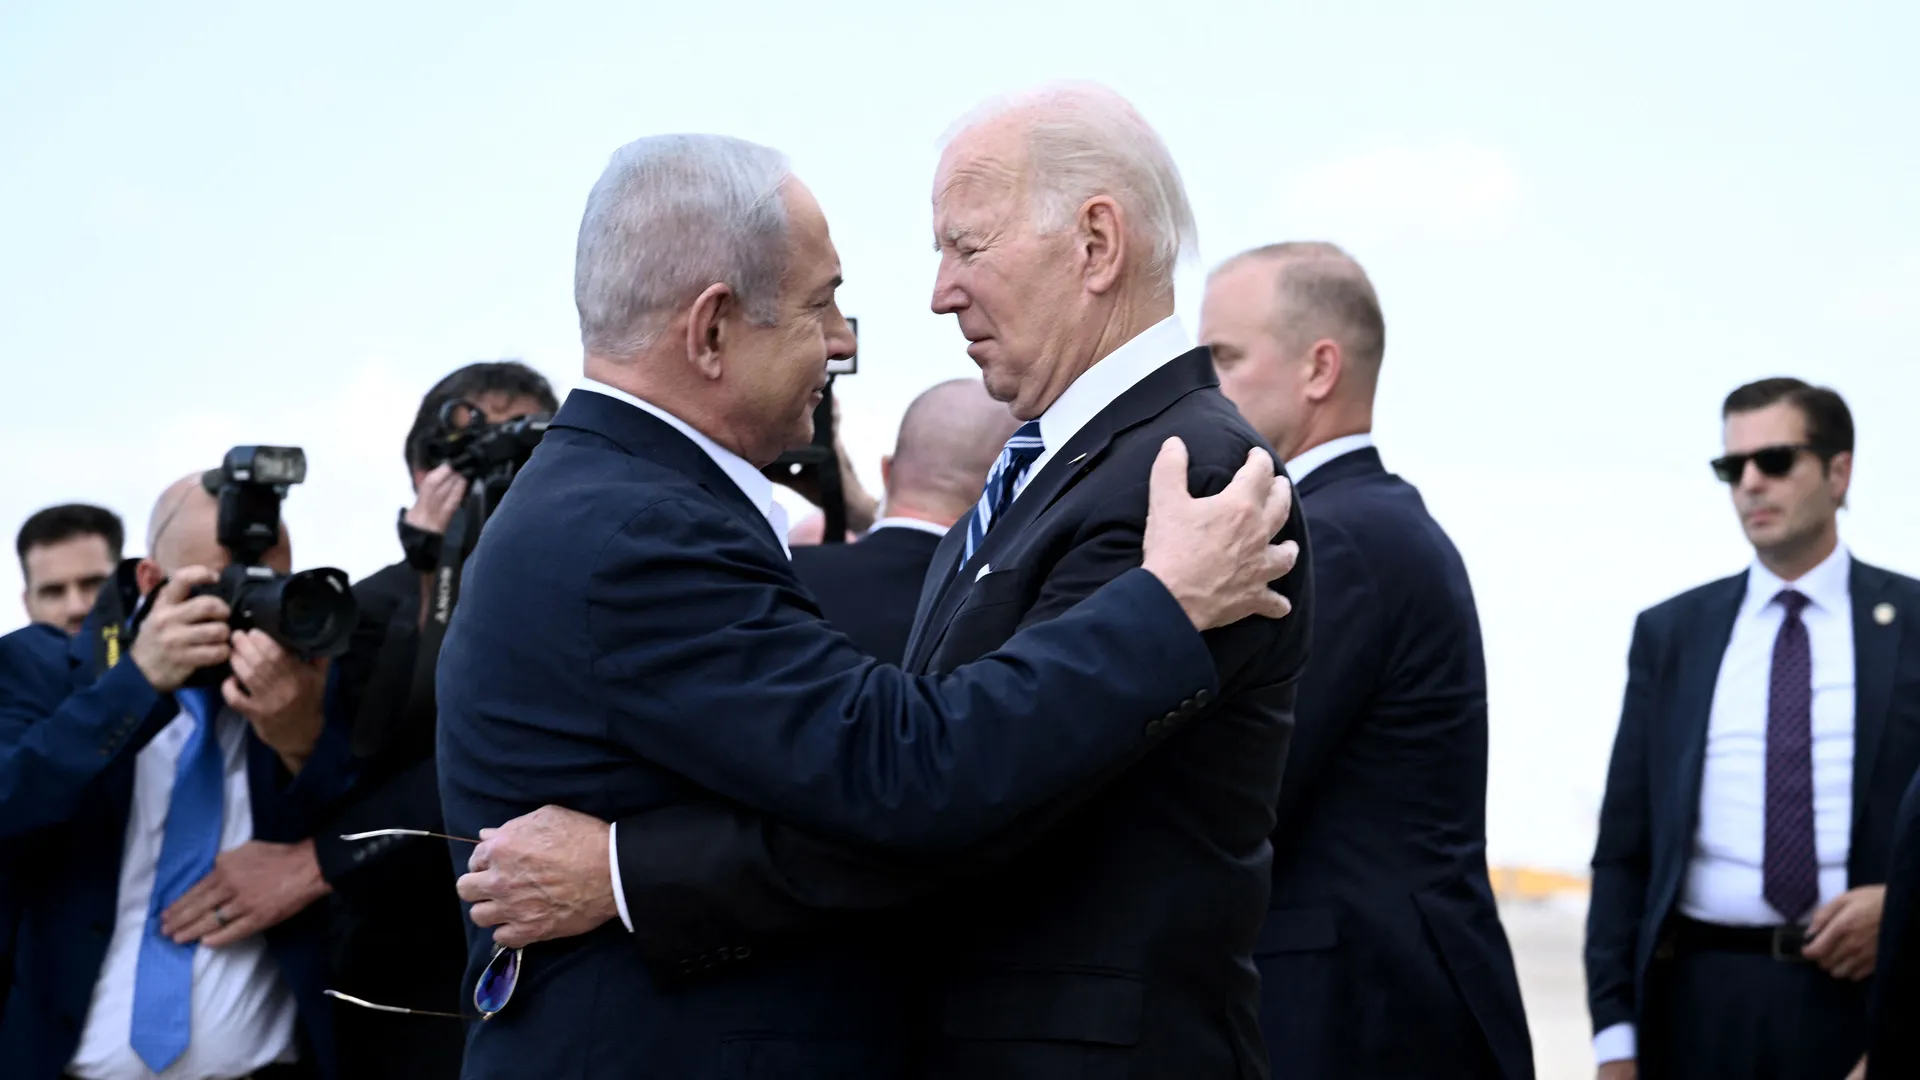 Biden diz que Israel não está sozinho e que libertar reféns é a prioridade - Brendan Smialowski/AFP via Getty